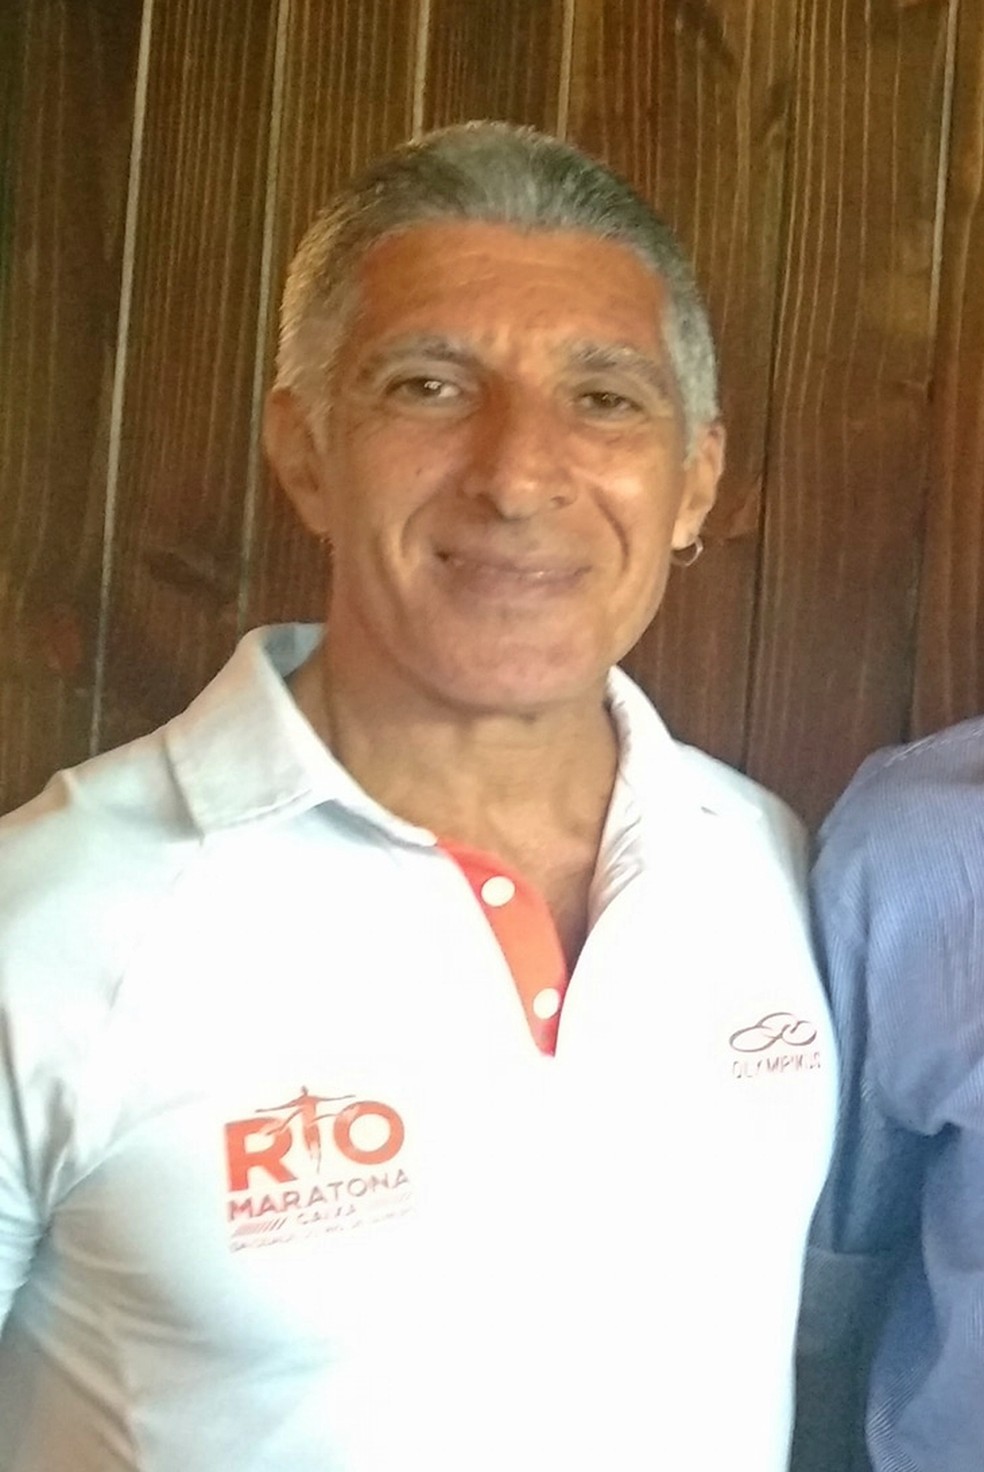 Carlos Sampaio, organizador da Maratona do Rio, é encontrado morto no Rio de Janeiro  (Foto: Reprodução Facebook/Harry Thomas)